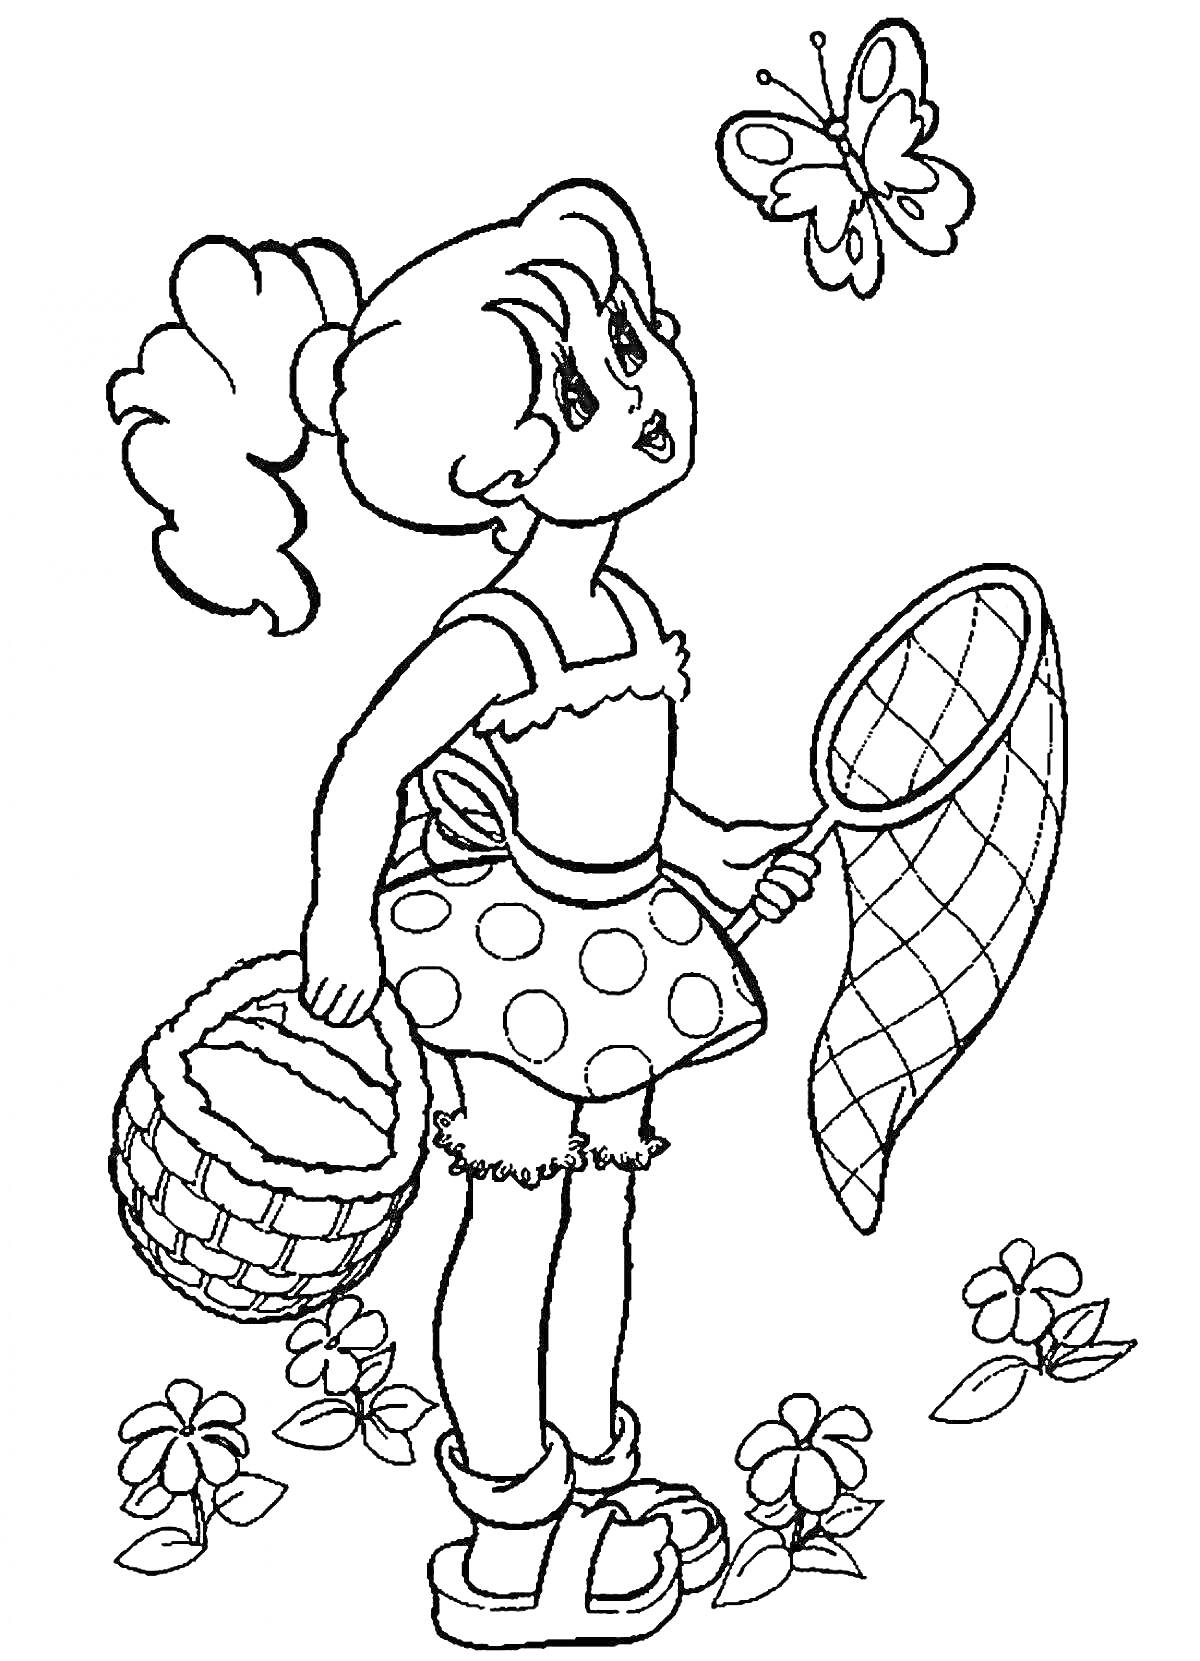 Раскраска Девочка с корзинкой и сачком для ловли бабочек, стоящая среди цветов и смотрящая на бабочку